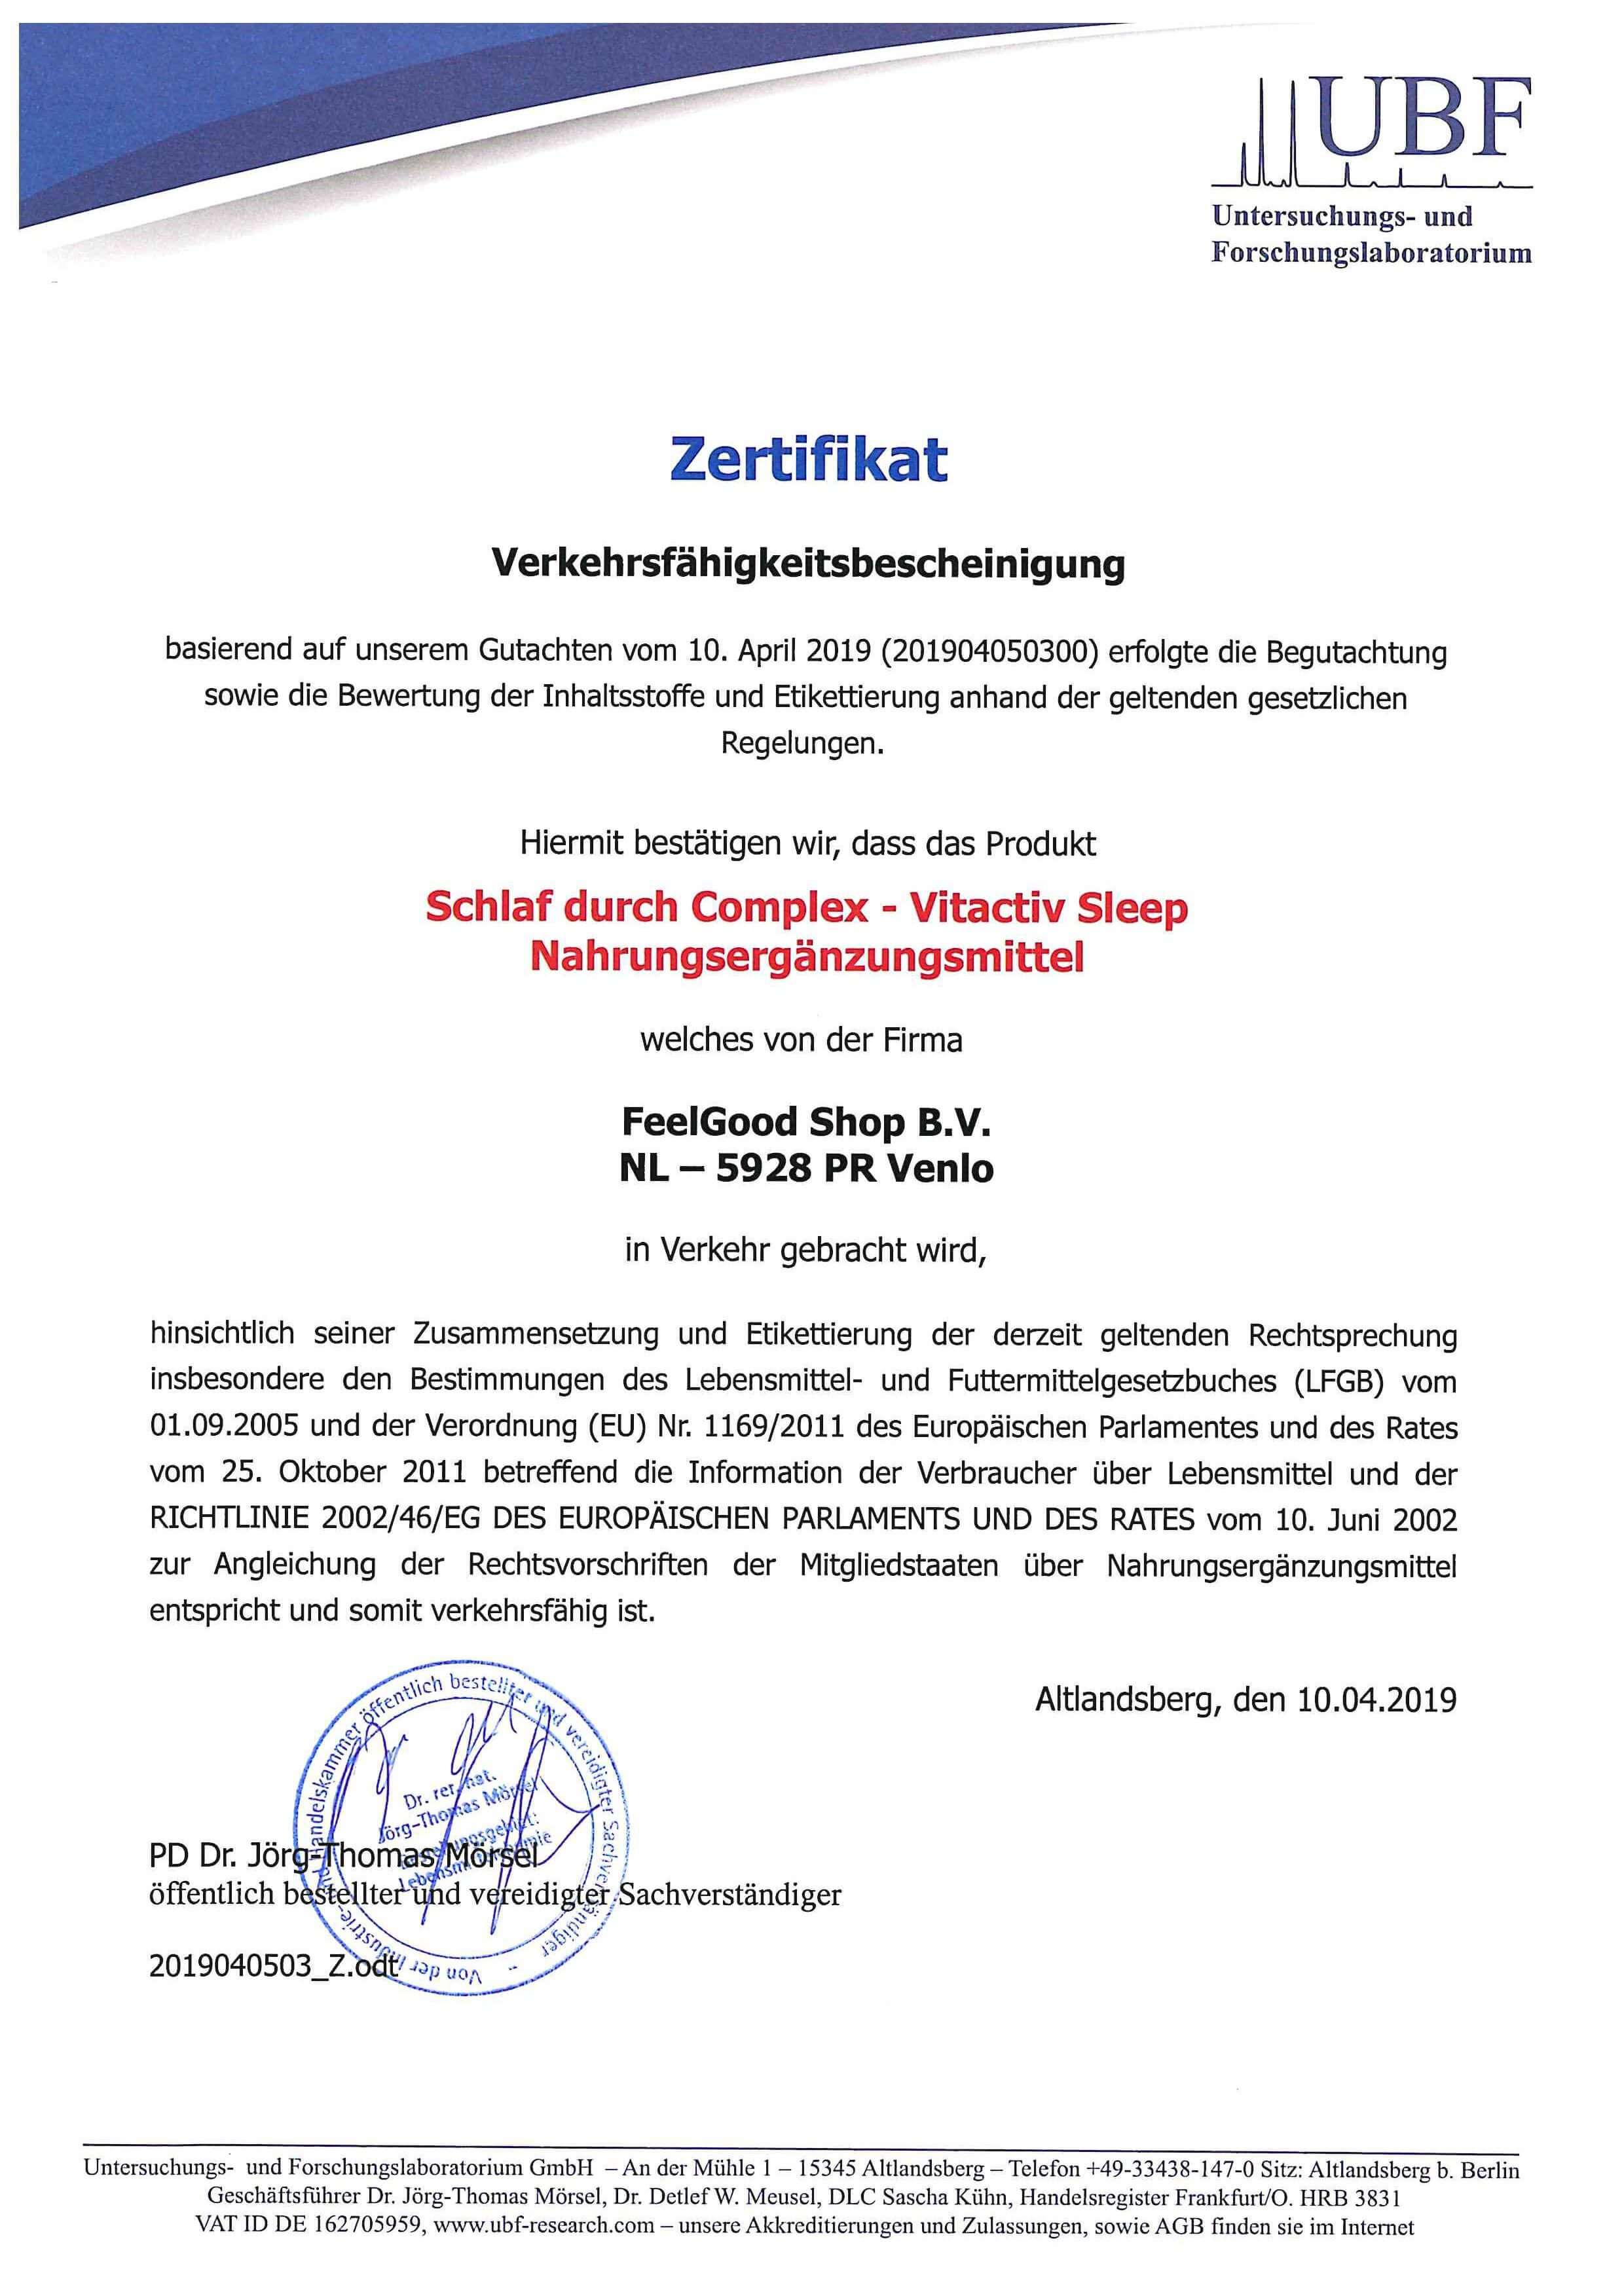 SchlafDURCH Complex Zertifikat